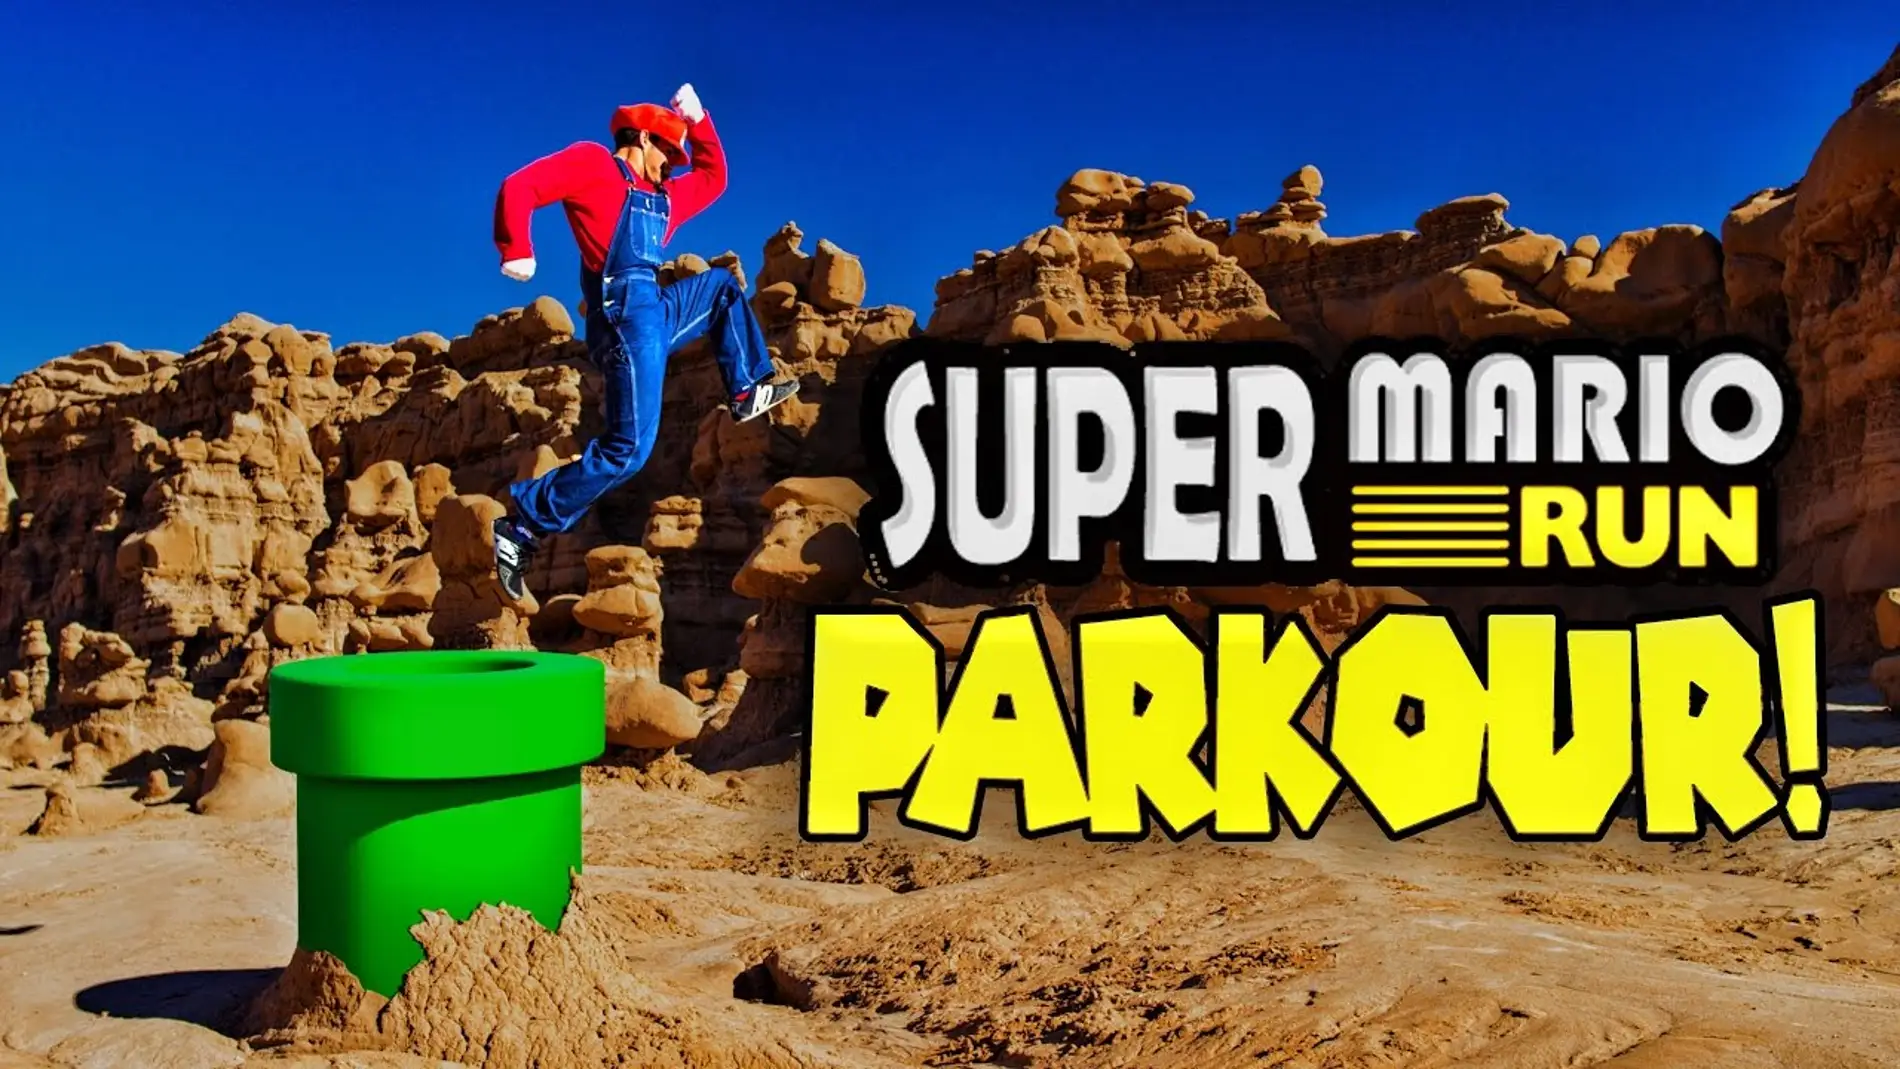 Super Mario Run Parkour